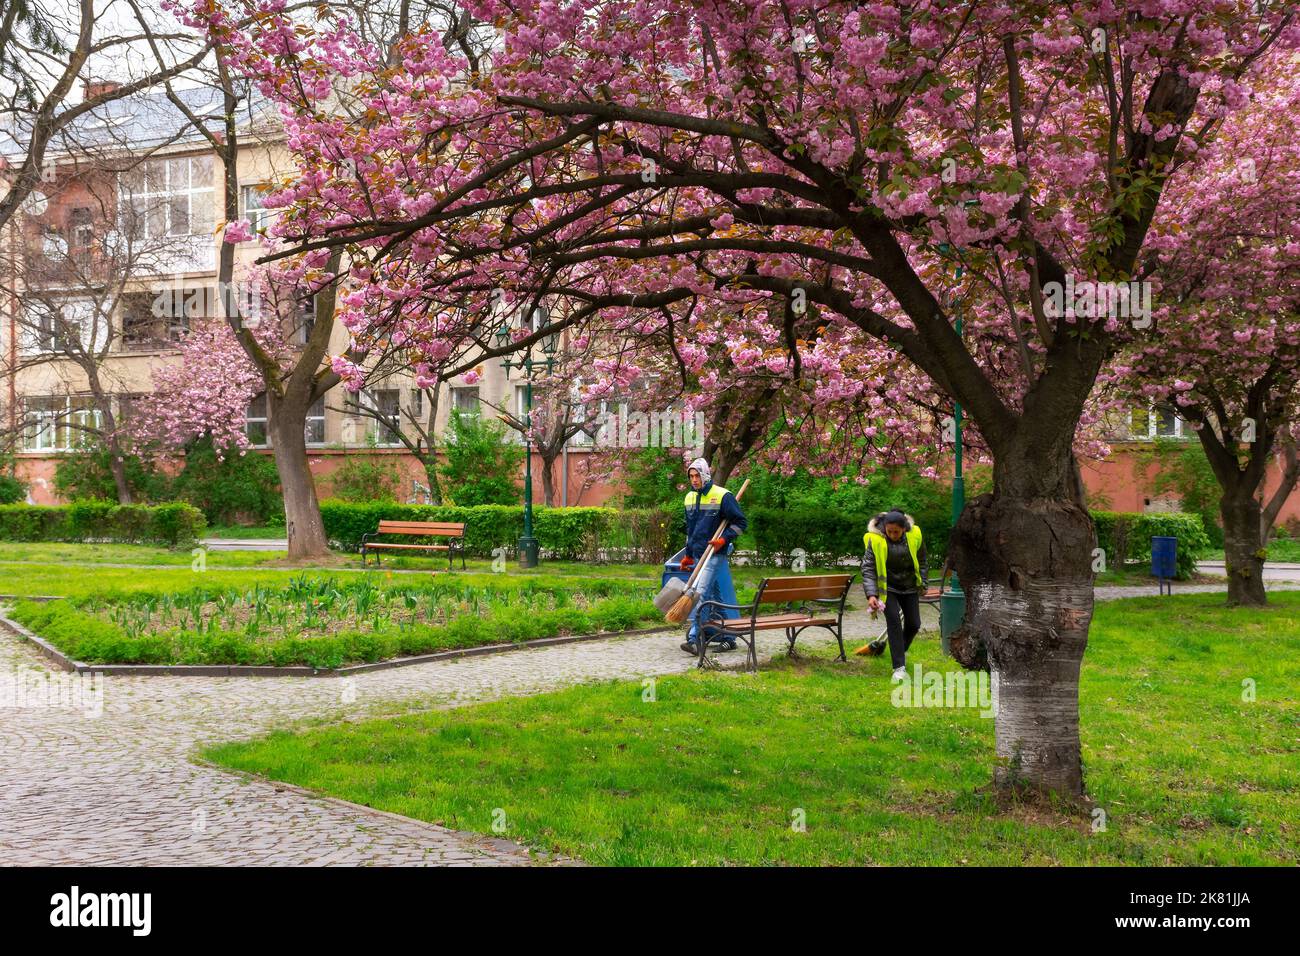 uzhgorod, ukraine - APR 18, 2017: Reinigung des Stadtparks in der Sakura-Blüte. Schöne Landschaft im Frühjahr. Wanderweg unter den Bäumen Stockfoto